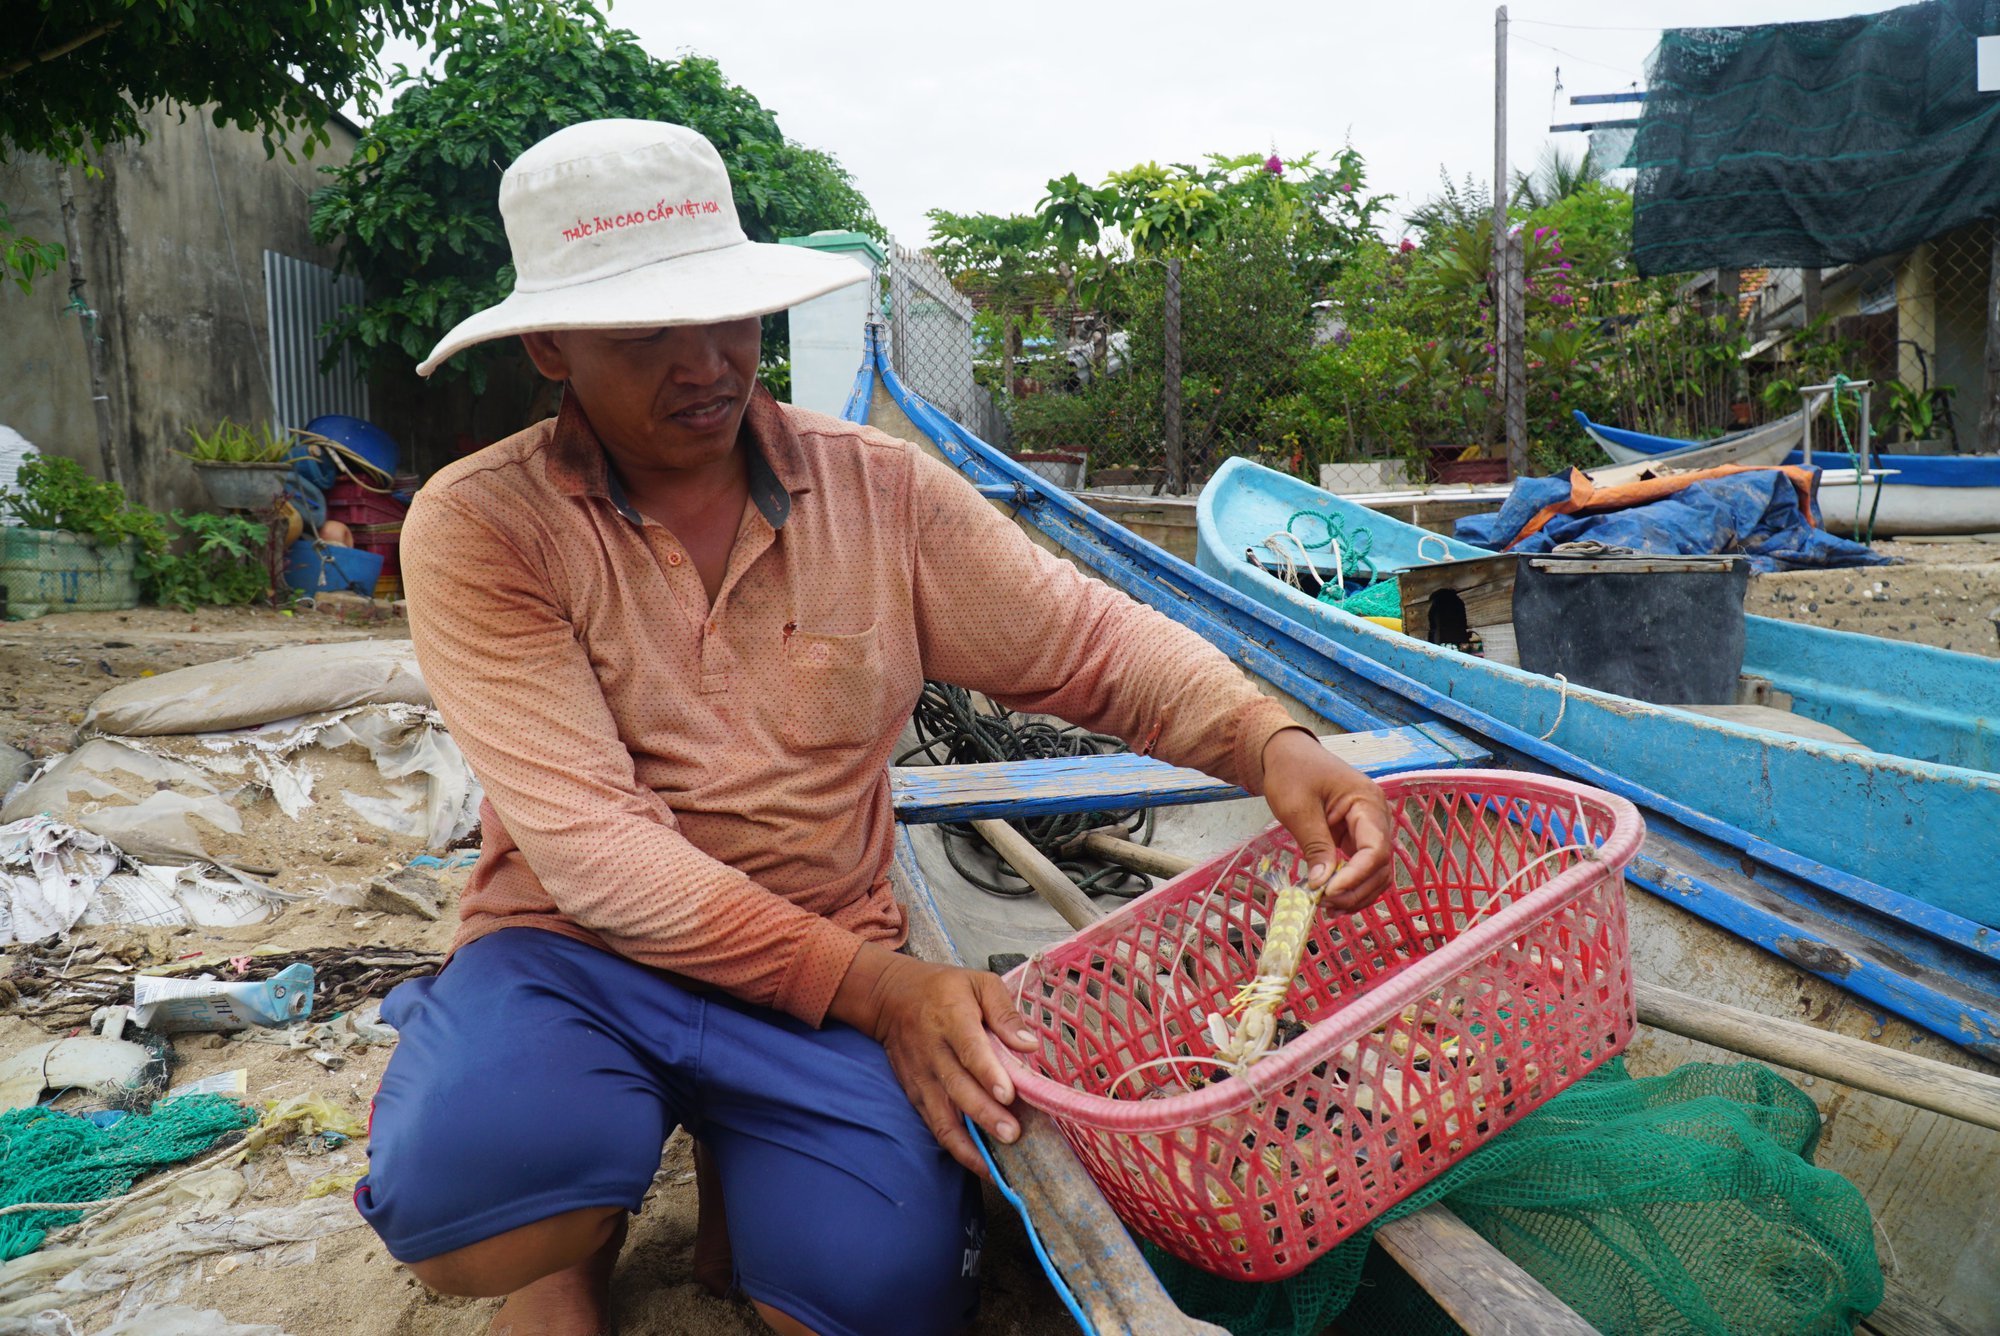 Ngư dân Khánh Hòa đi săn tôm tít biển để bán cho nhà hàng, chợ kiếm gần 500 ngàn đồng/ngày - Ảnh 1.